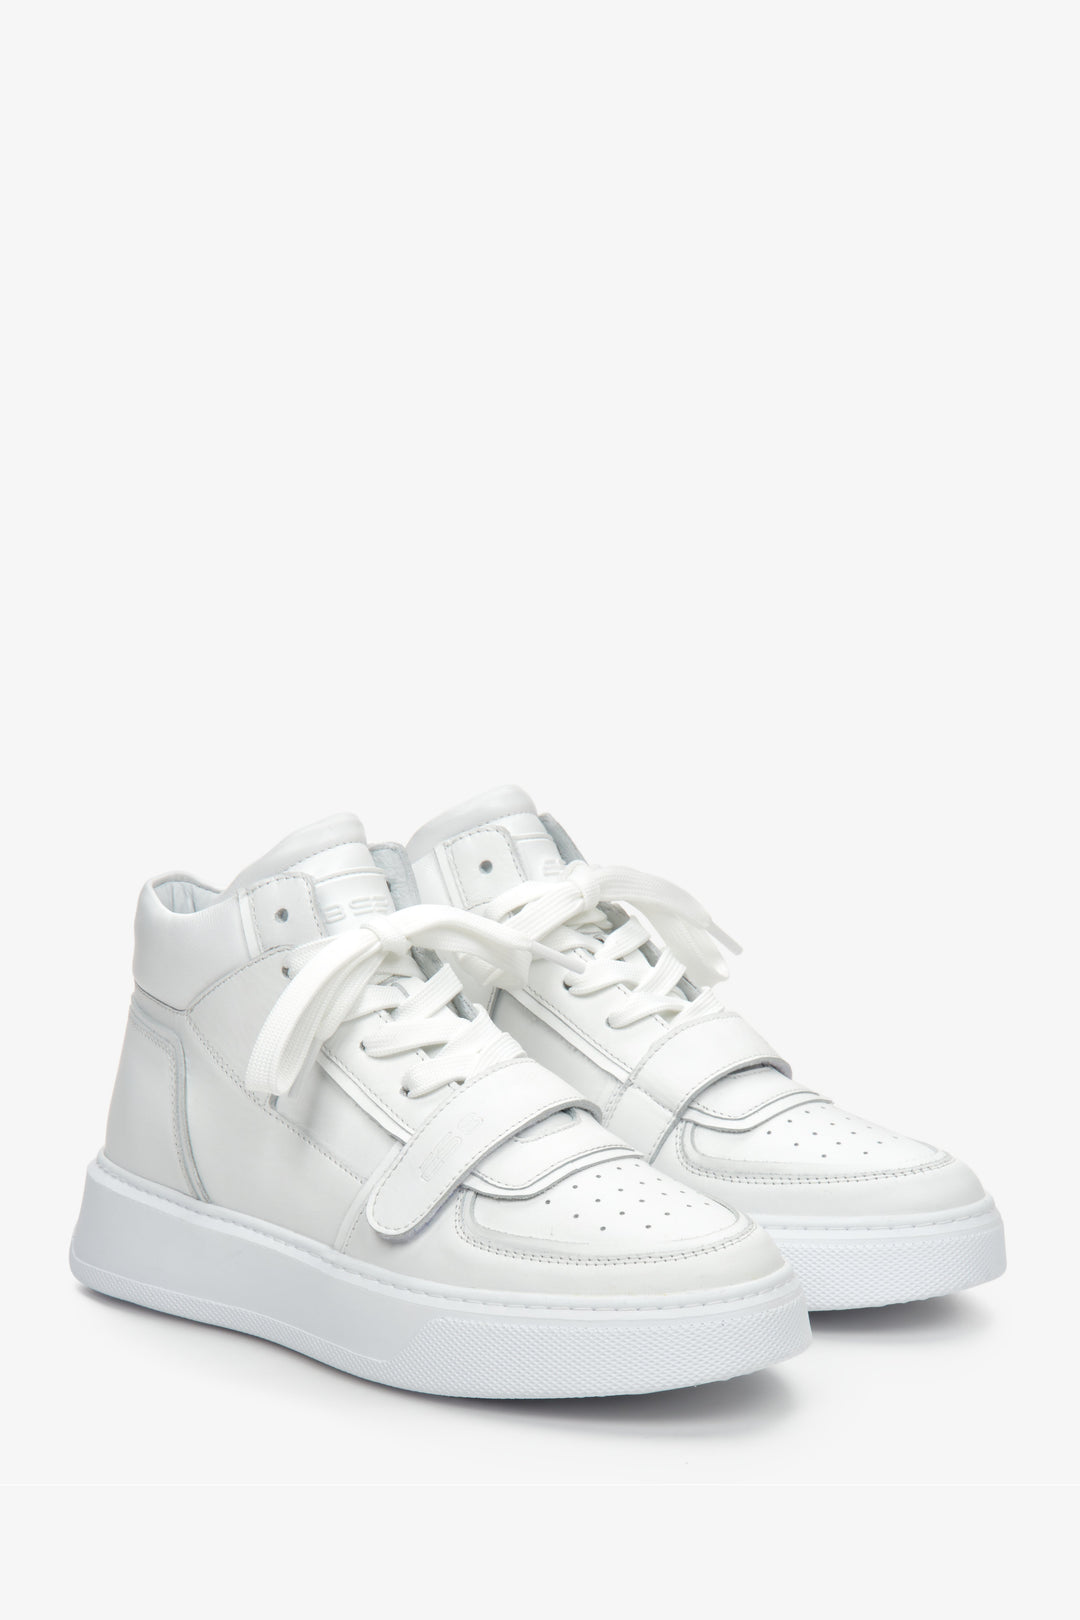 Damskie, skórzane, wysokie sneakersy sportowe ze sznurowaniem i ozdobnym rzepem marki ES 8 - kolor biały.